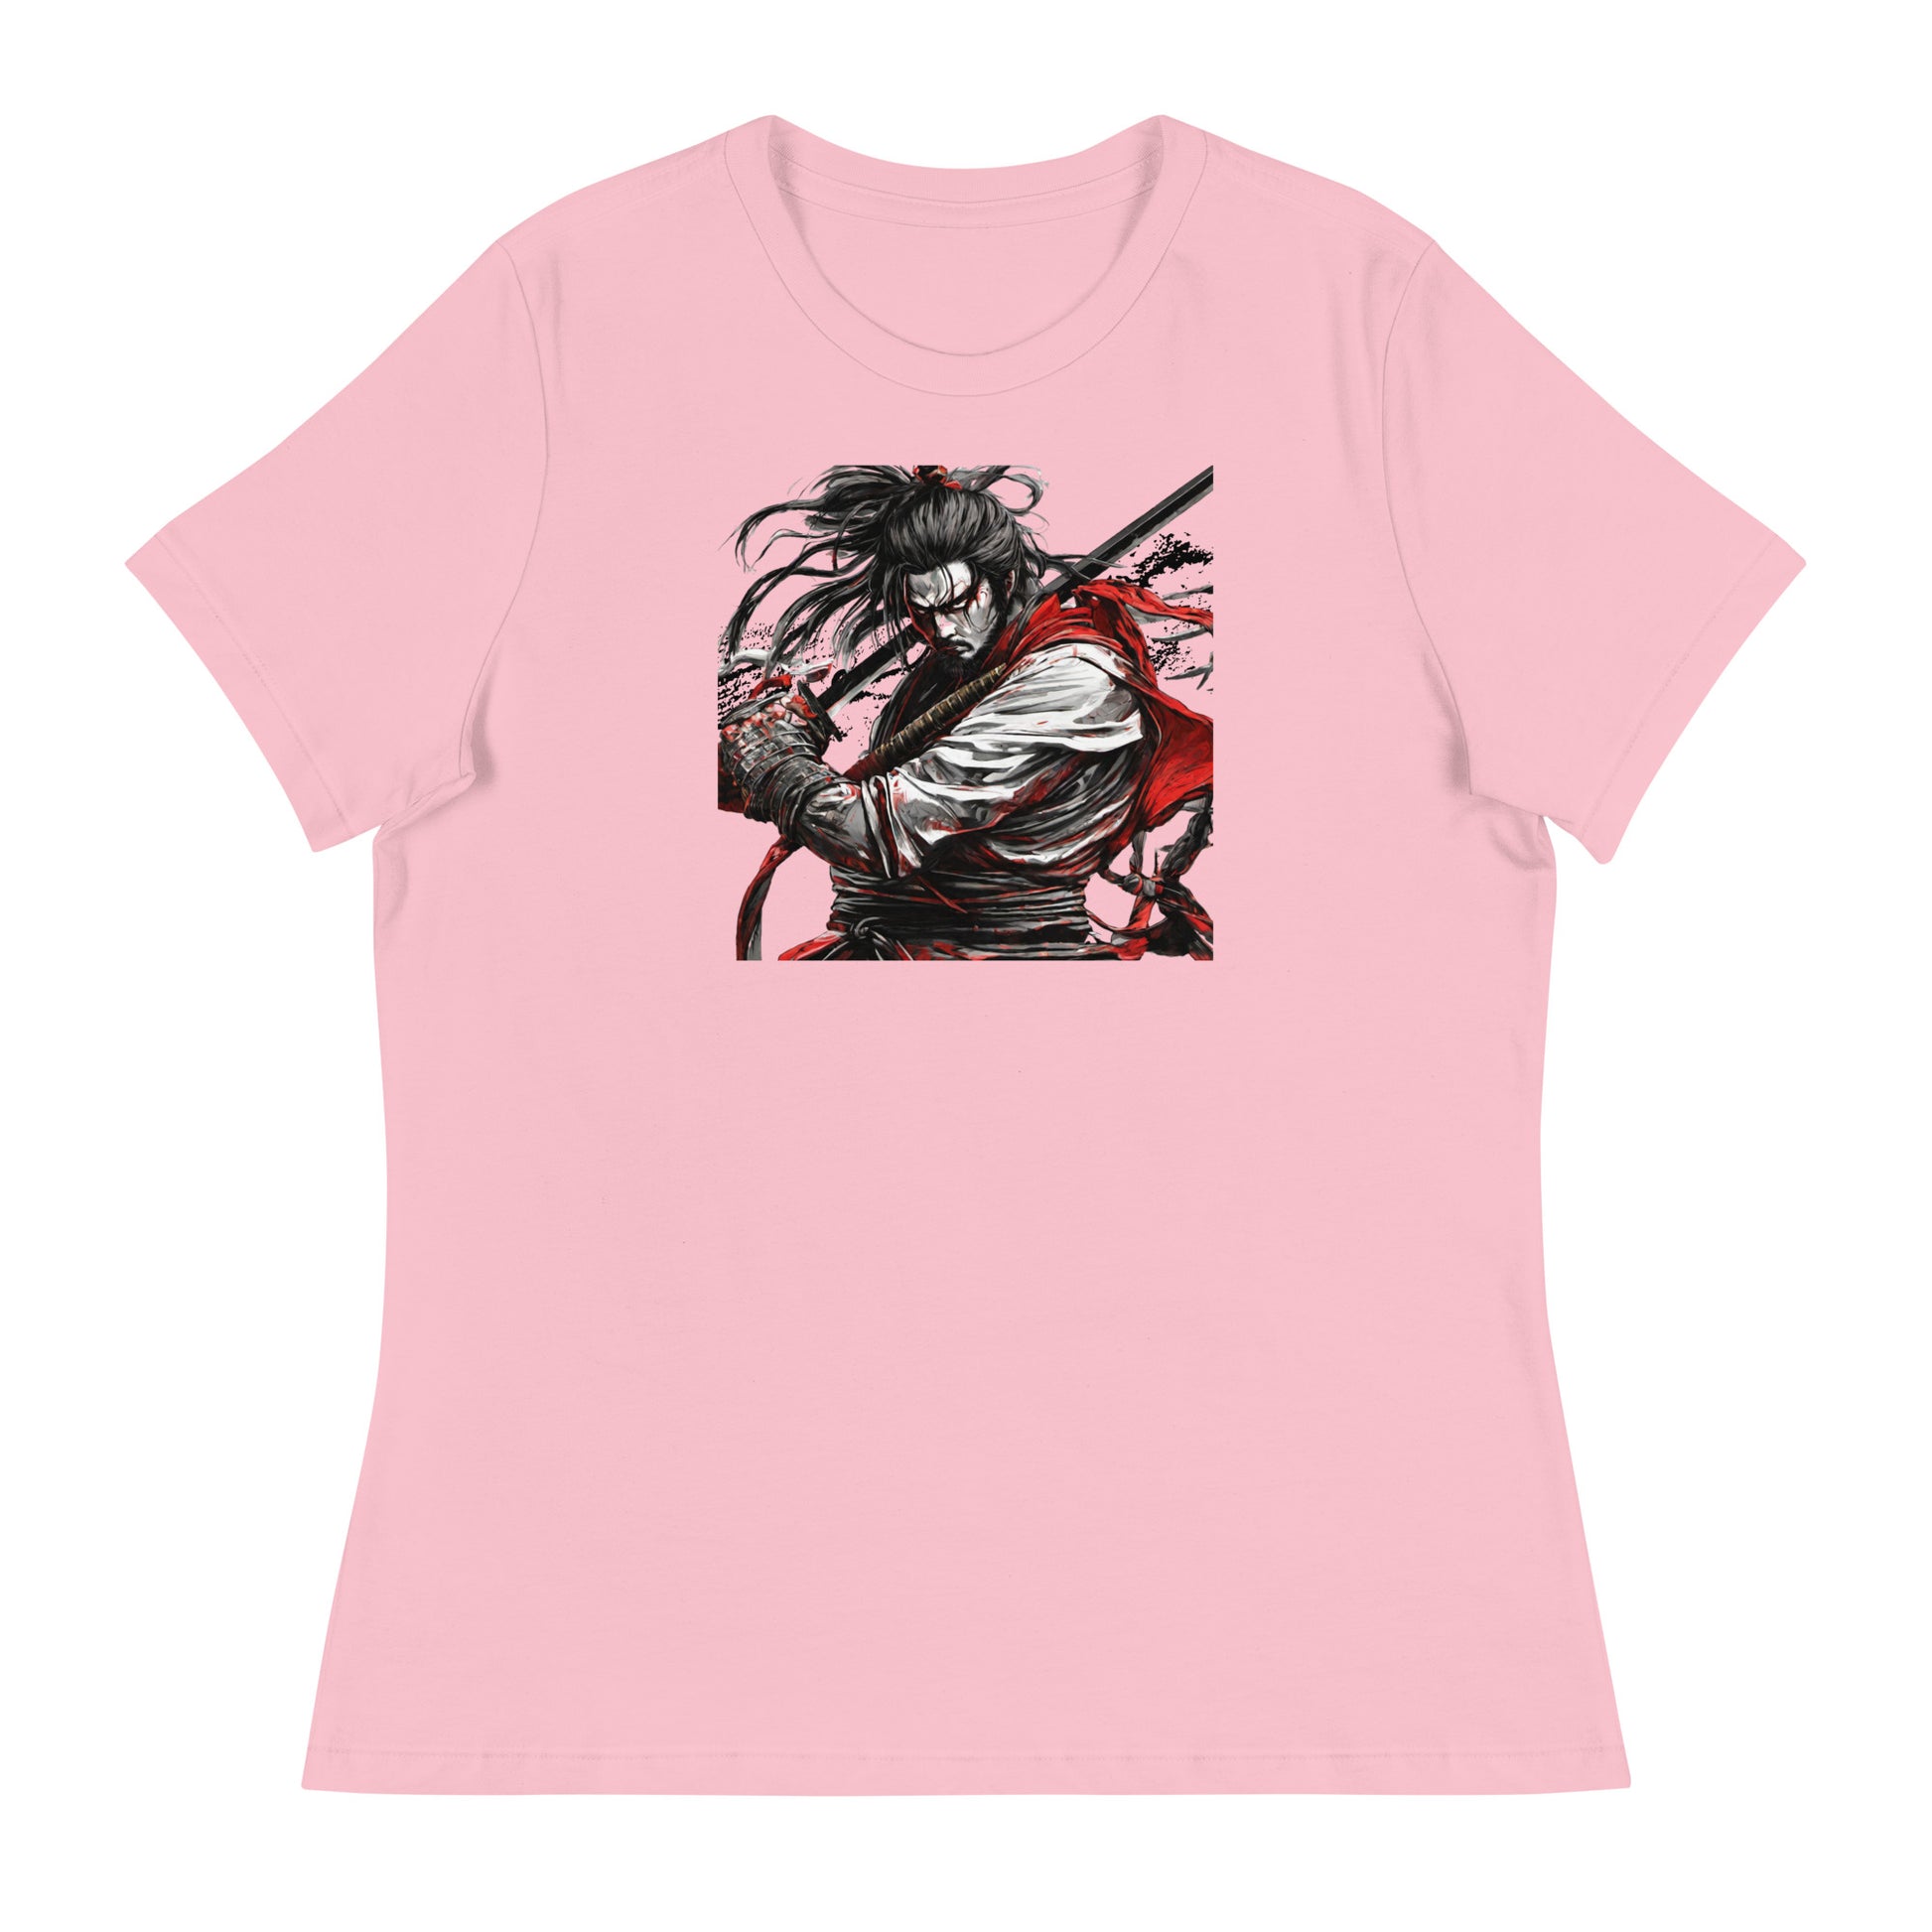 Graceful Warrior Women's T-Shirt Pink